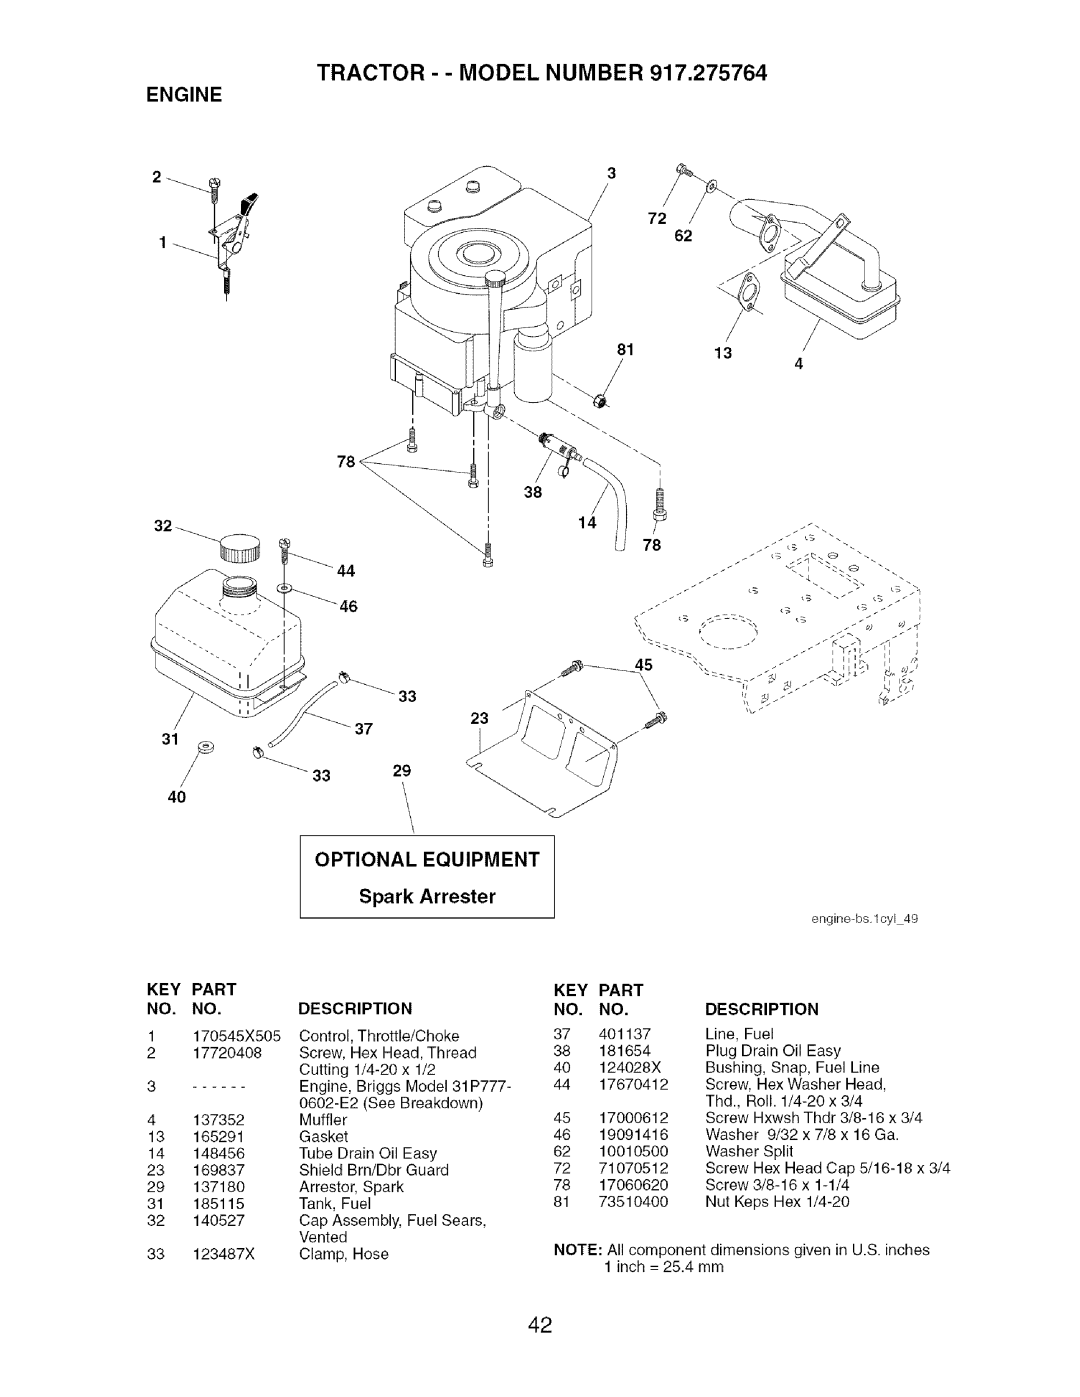 Craftsman 917.275764 owner manual Optional, Equipment, Spark, Arrester, Engine, Part 